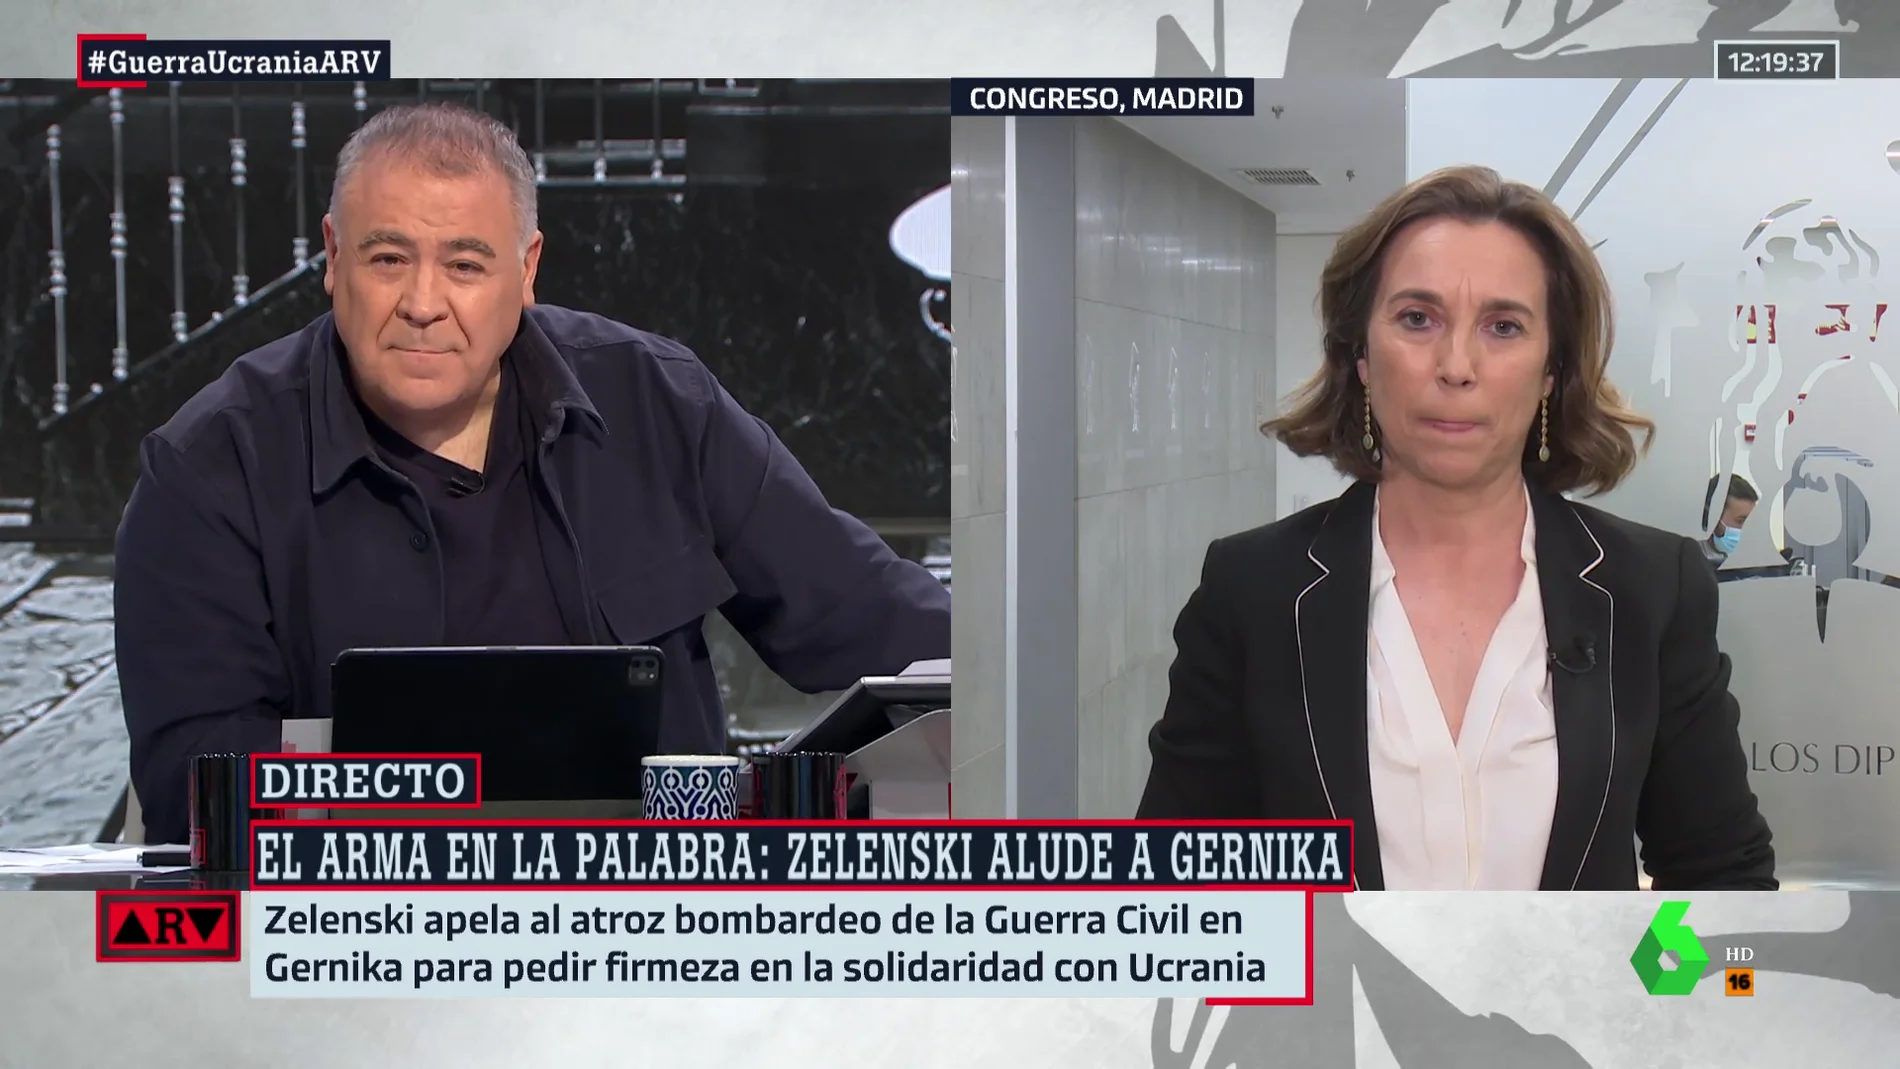 Gamarra asegura que Feijóo acudirá a la reunión de Sánchez "con voluntad de diálogo" y escuchará al Gobierno respecto al plan anticrisis